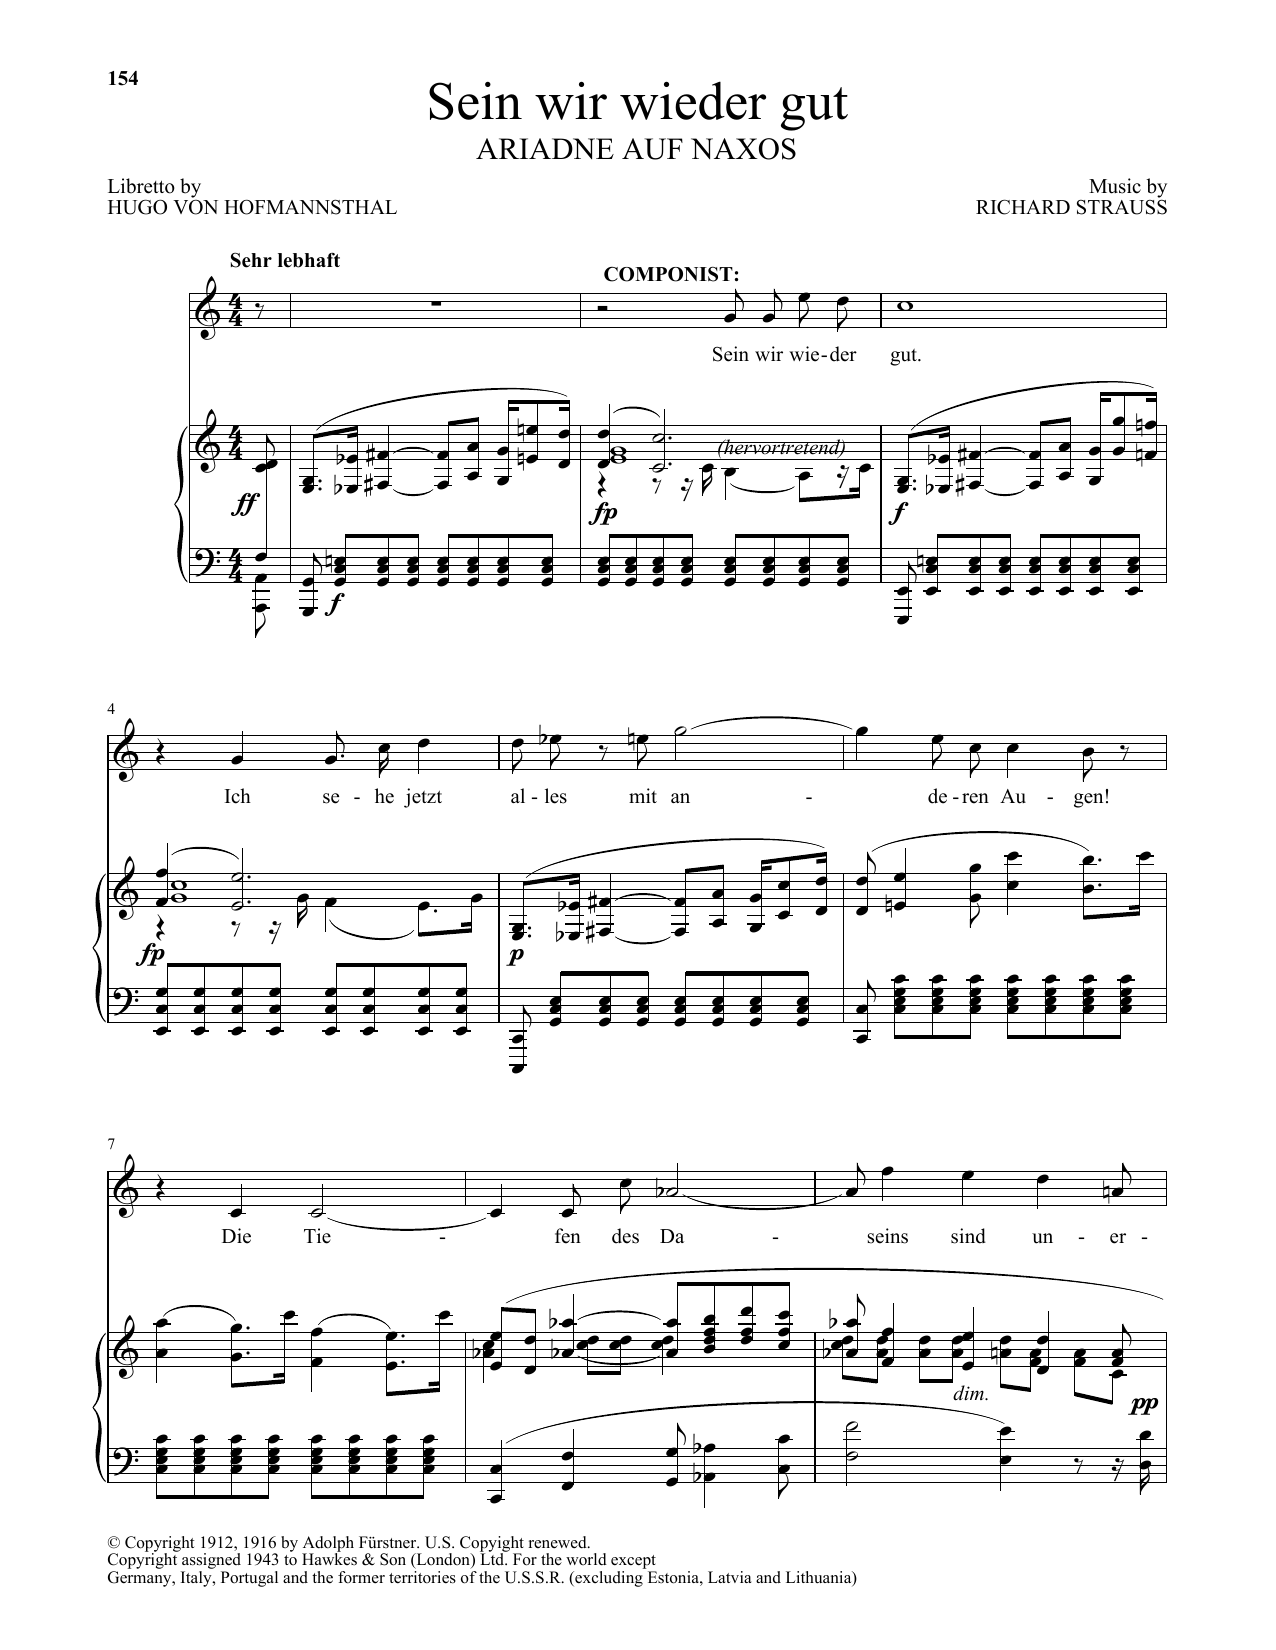 Richard Strauss Sein wir wieder gut (from Ariadne Auf Naxos) sheet music notes and chords arranged for Piano & Vocal